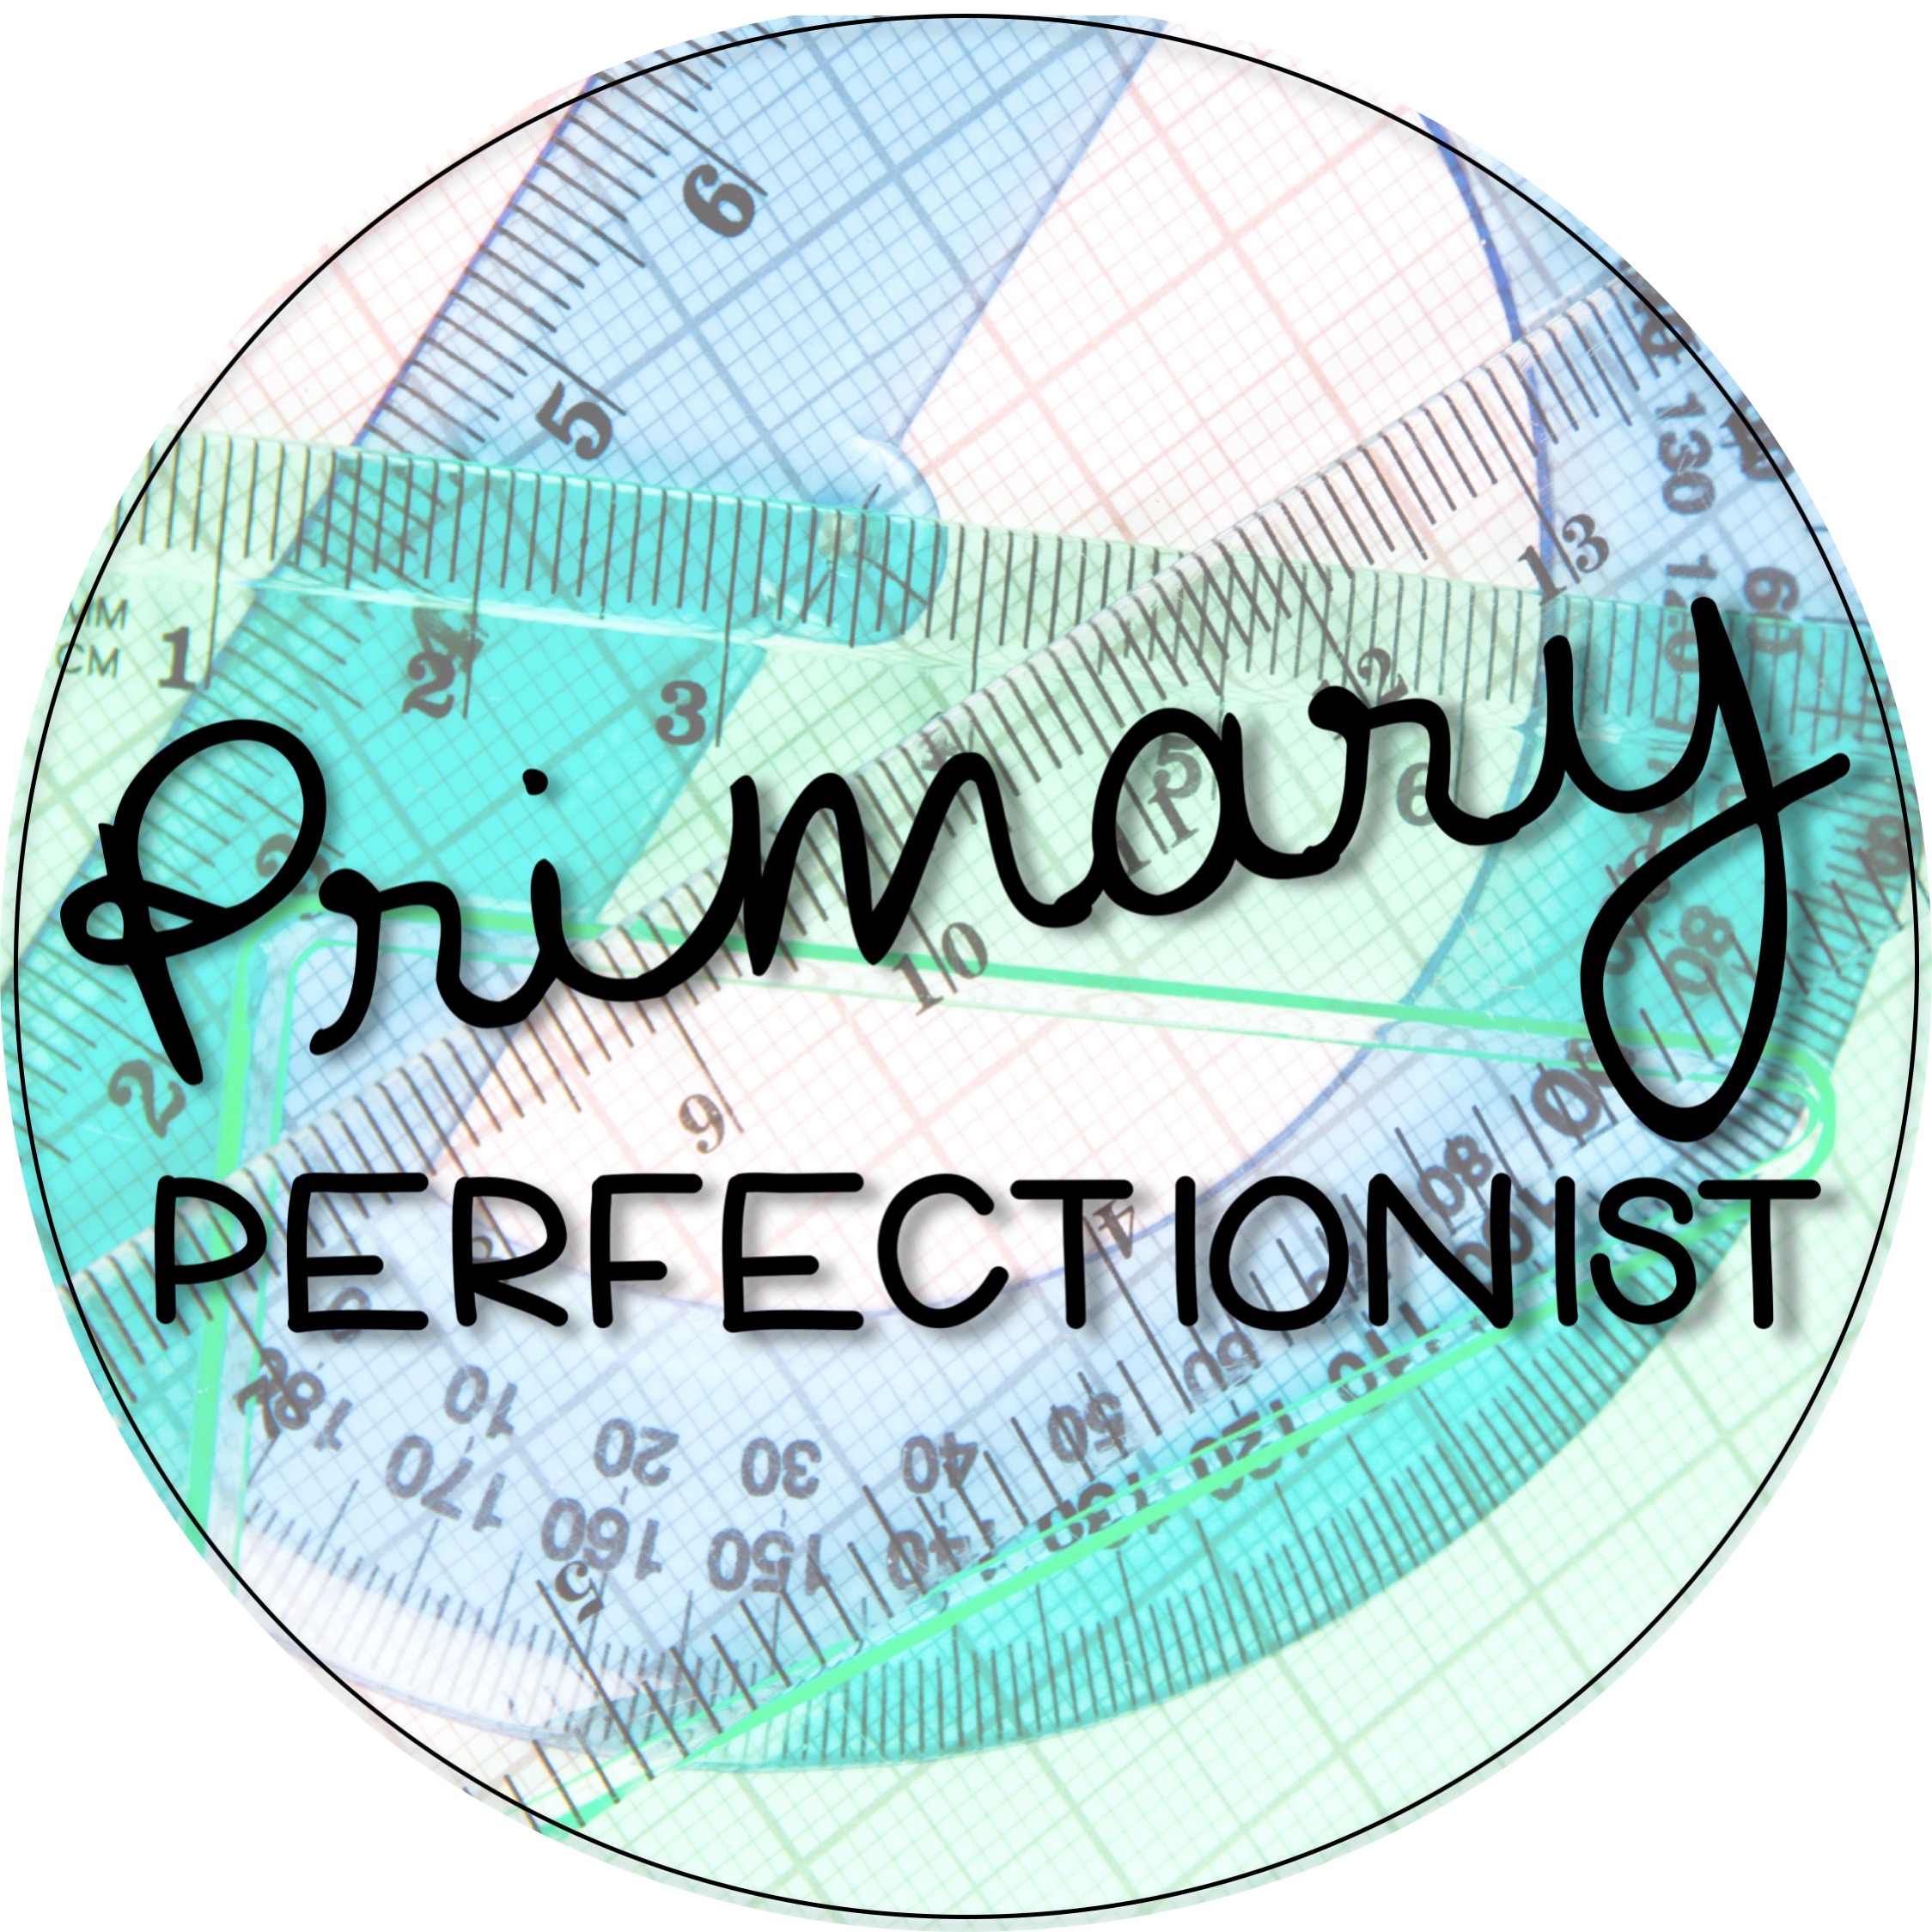 Primary Perfectionist